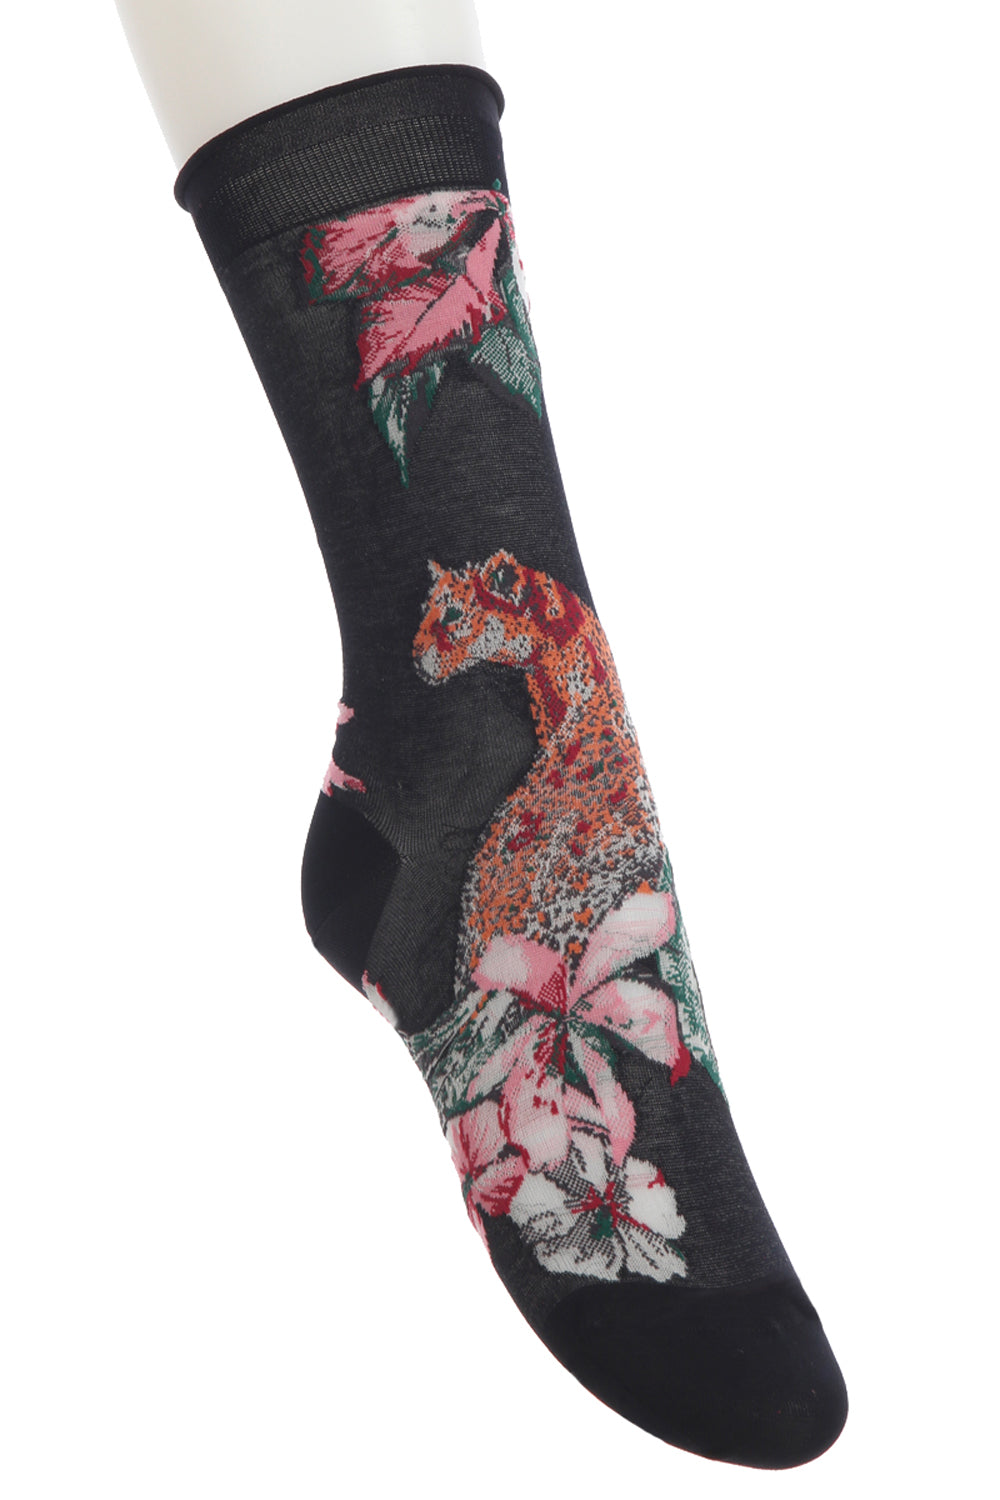 Unisex Socks Winter Warm Flowers Pattern Floral Cotton Long Footwear Accessories